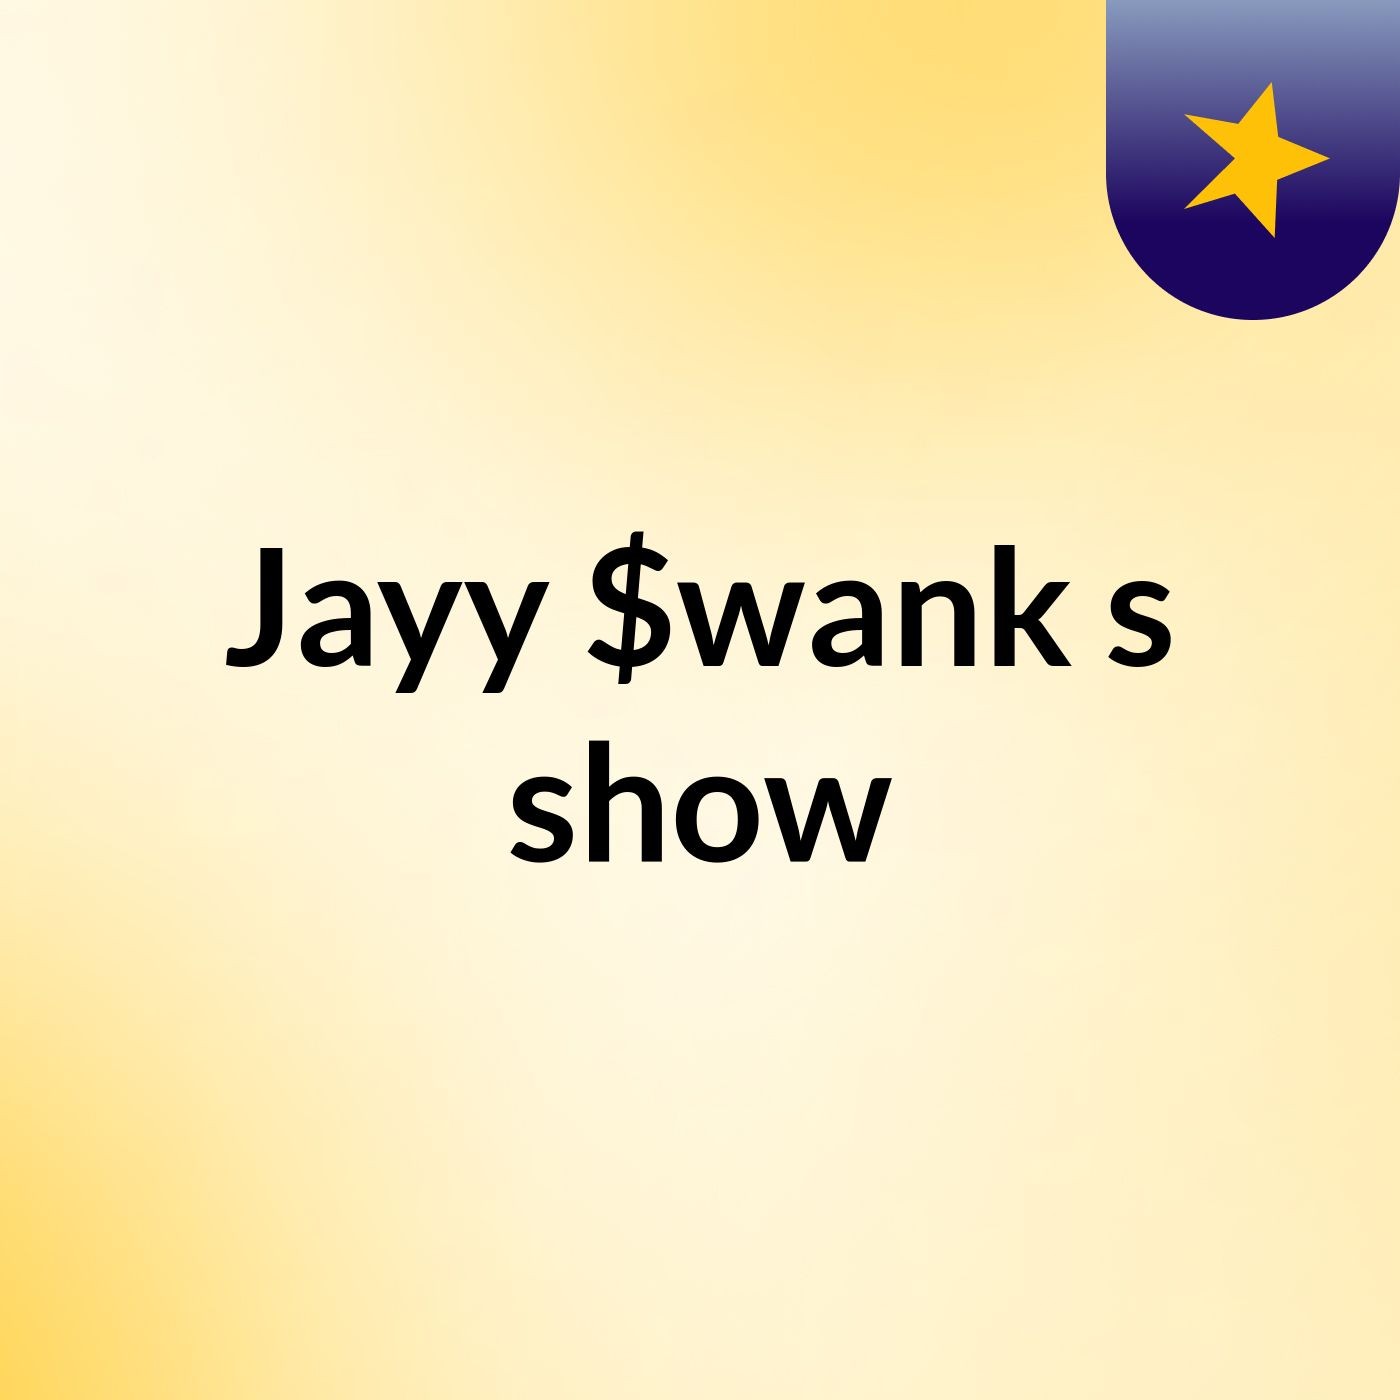 Jayy $wank's show